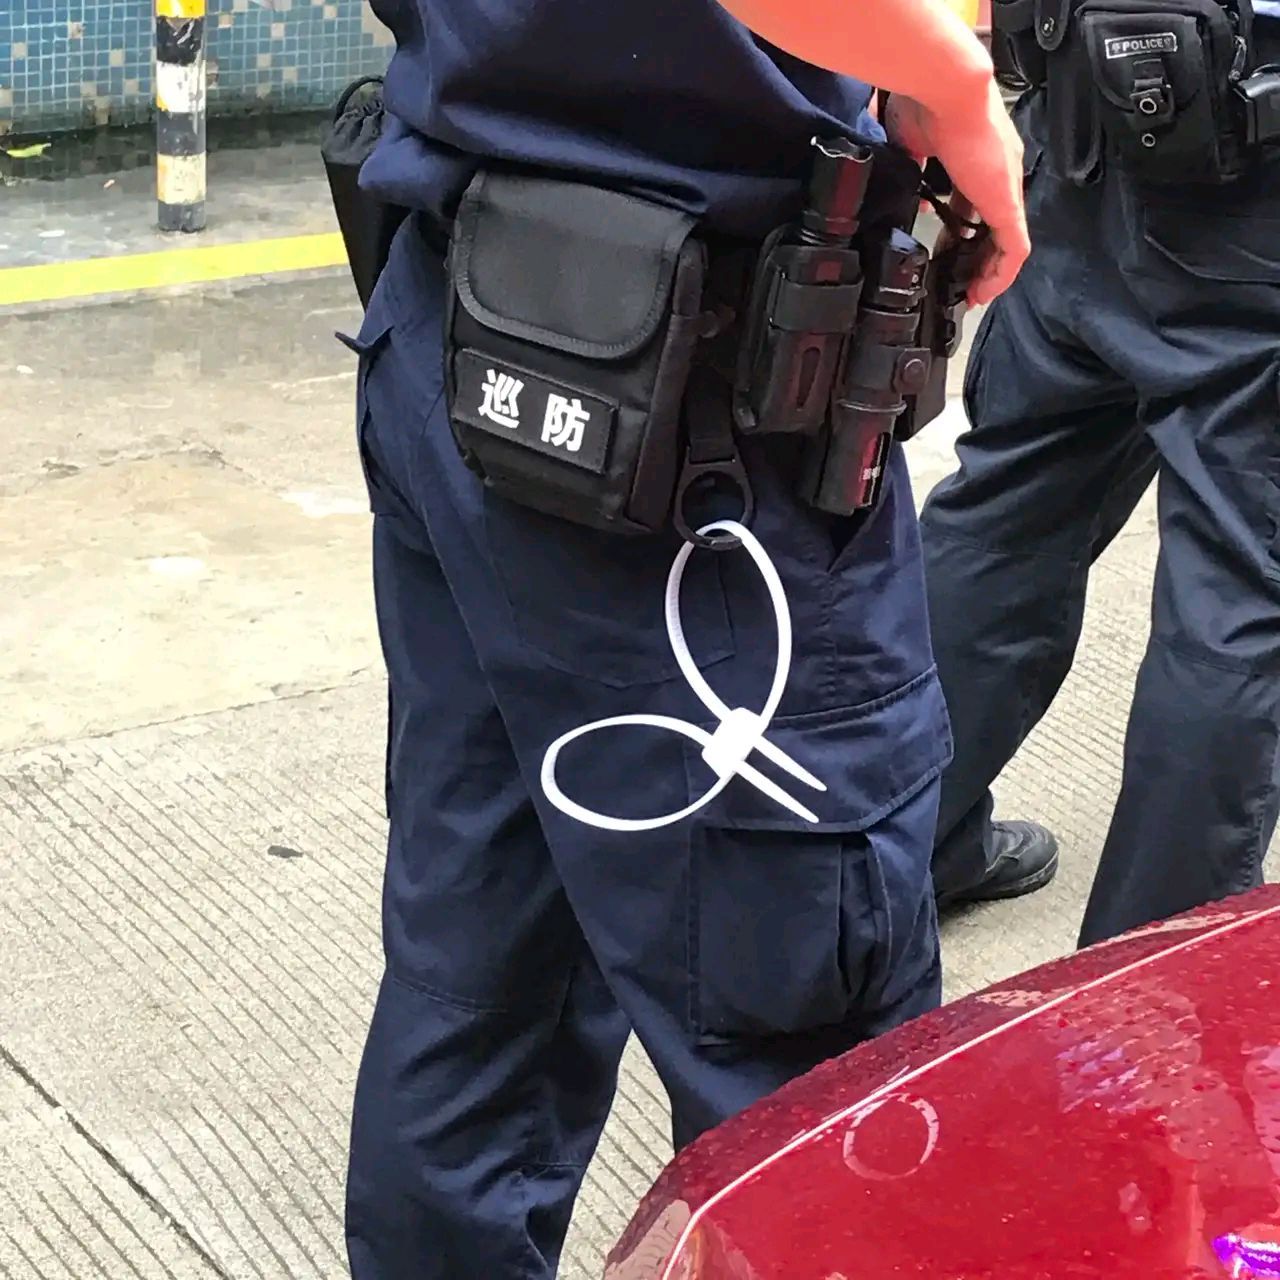 深圳 发现一名警察带一个辅警来现场辅警身上带着扎带很粗,很显眼